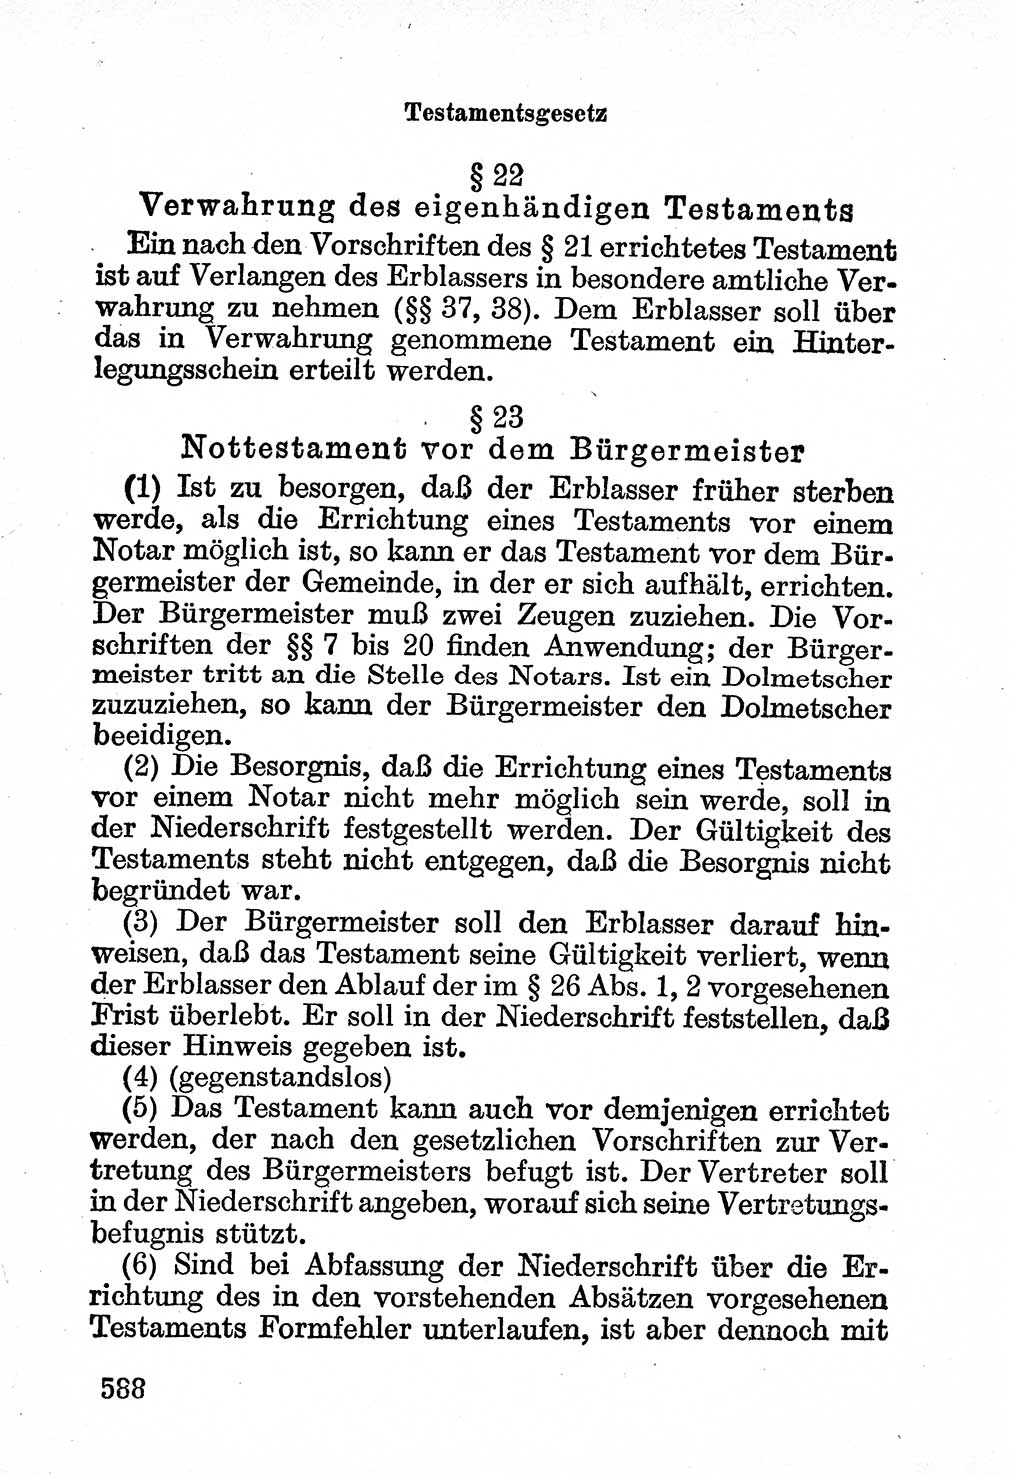 Bürgerliches Gesetzbuch (BGB) nebst wichtigen Nebengesetzen [Deutsche Demokratische Republik (DDR)] 1956, Seite 588 (BGB Nebenges. DDR 1956, S. 588)